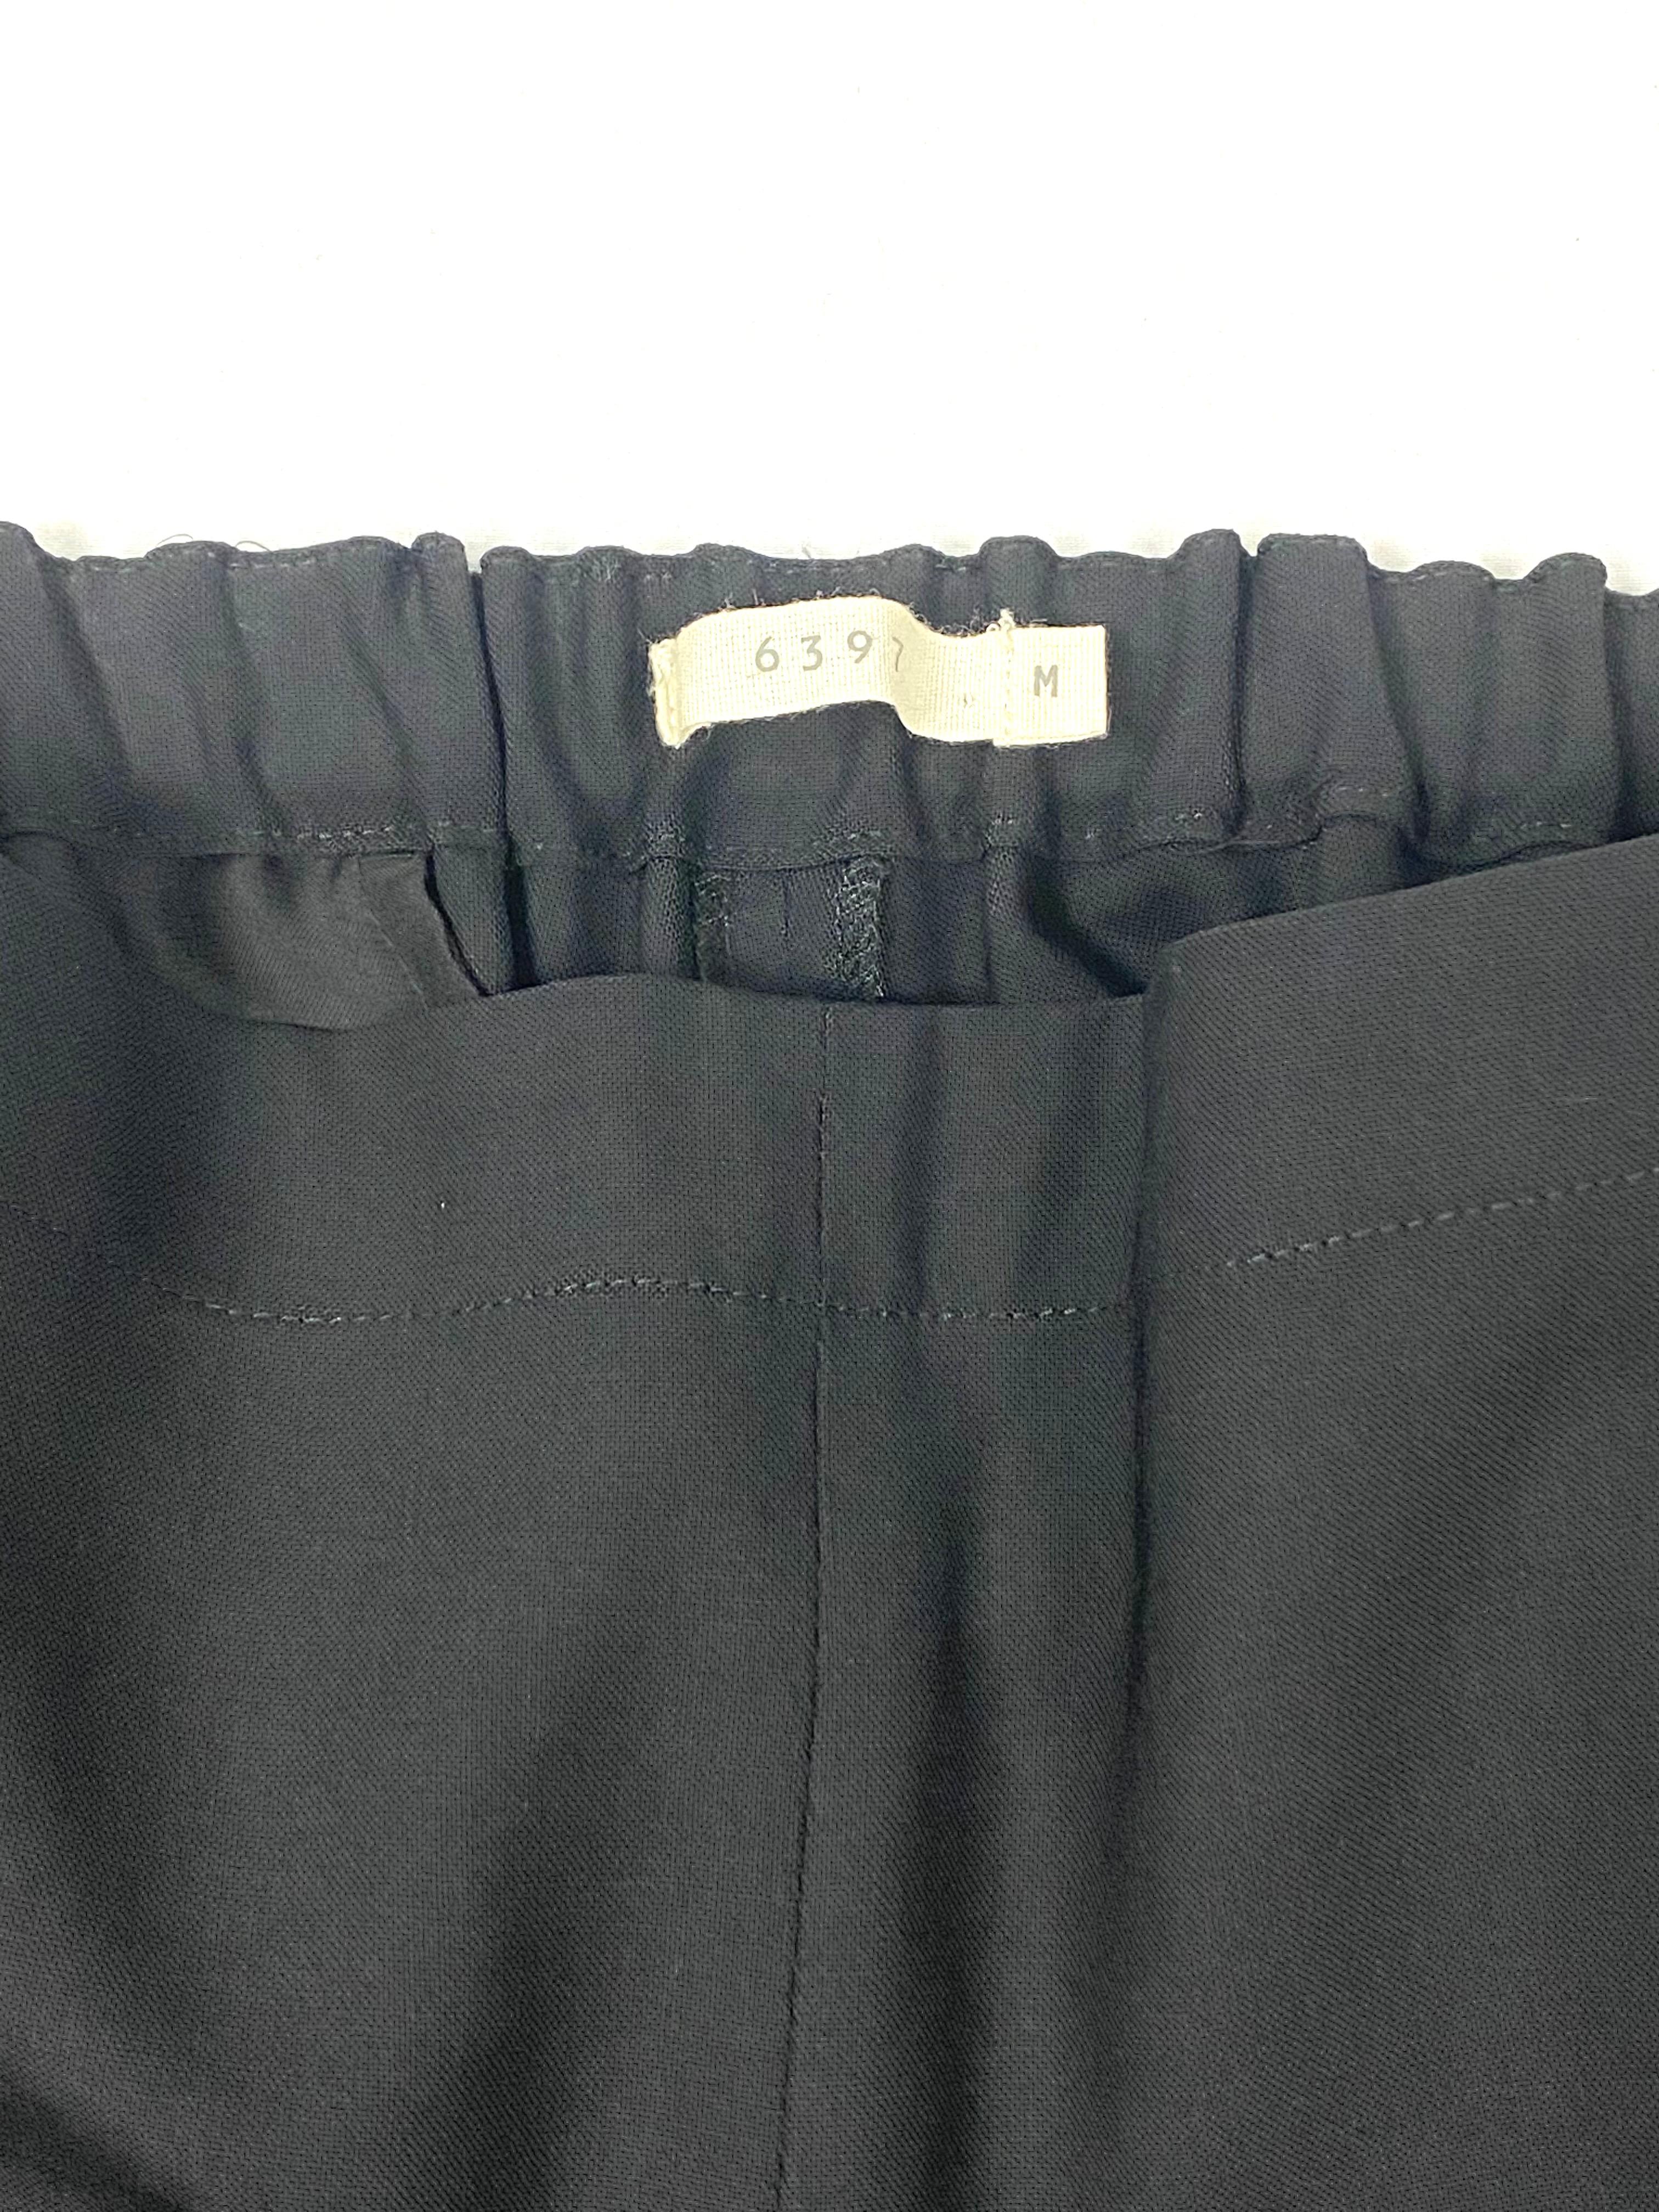 Einzelheiten zum Produkt:

Die Hose besteht aus 96% Wolle, ist schwarz und hat einen dehnbaren Gummizug auf der Rückseite der Taille, Taschen an den Seiten und eine Tasche auf der Rückseite. Hergestellt in den USA.